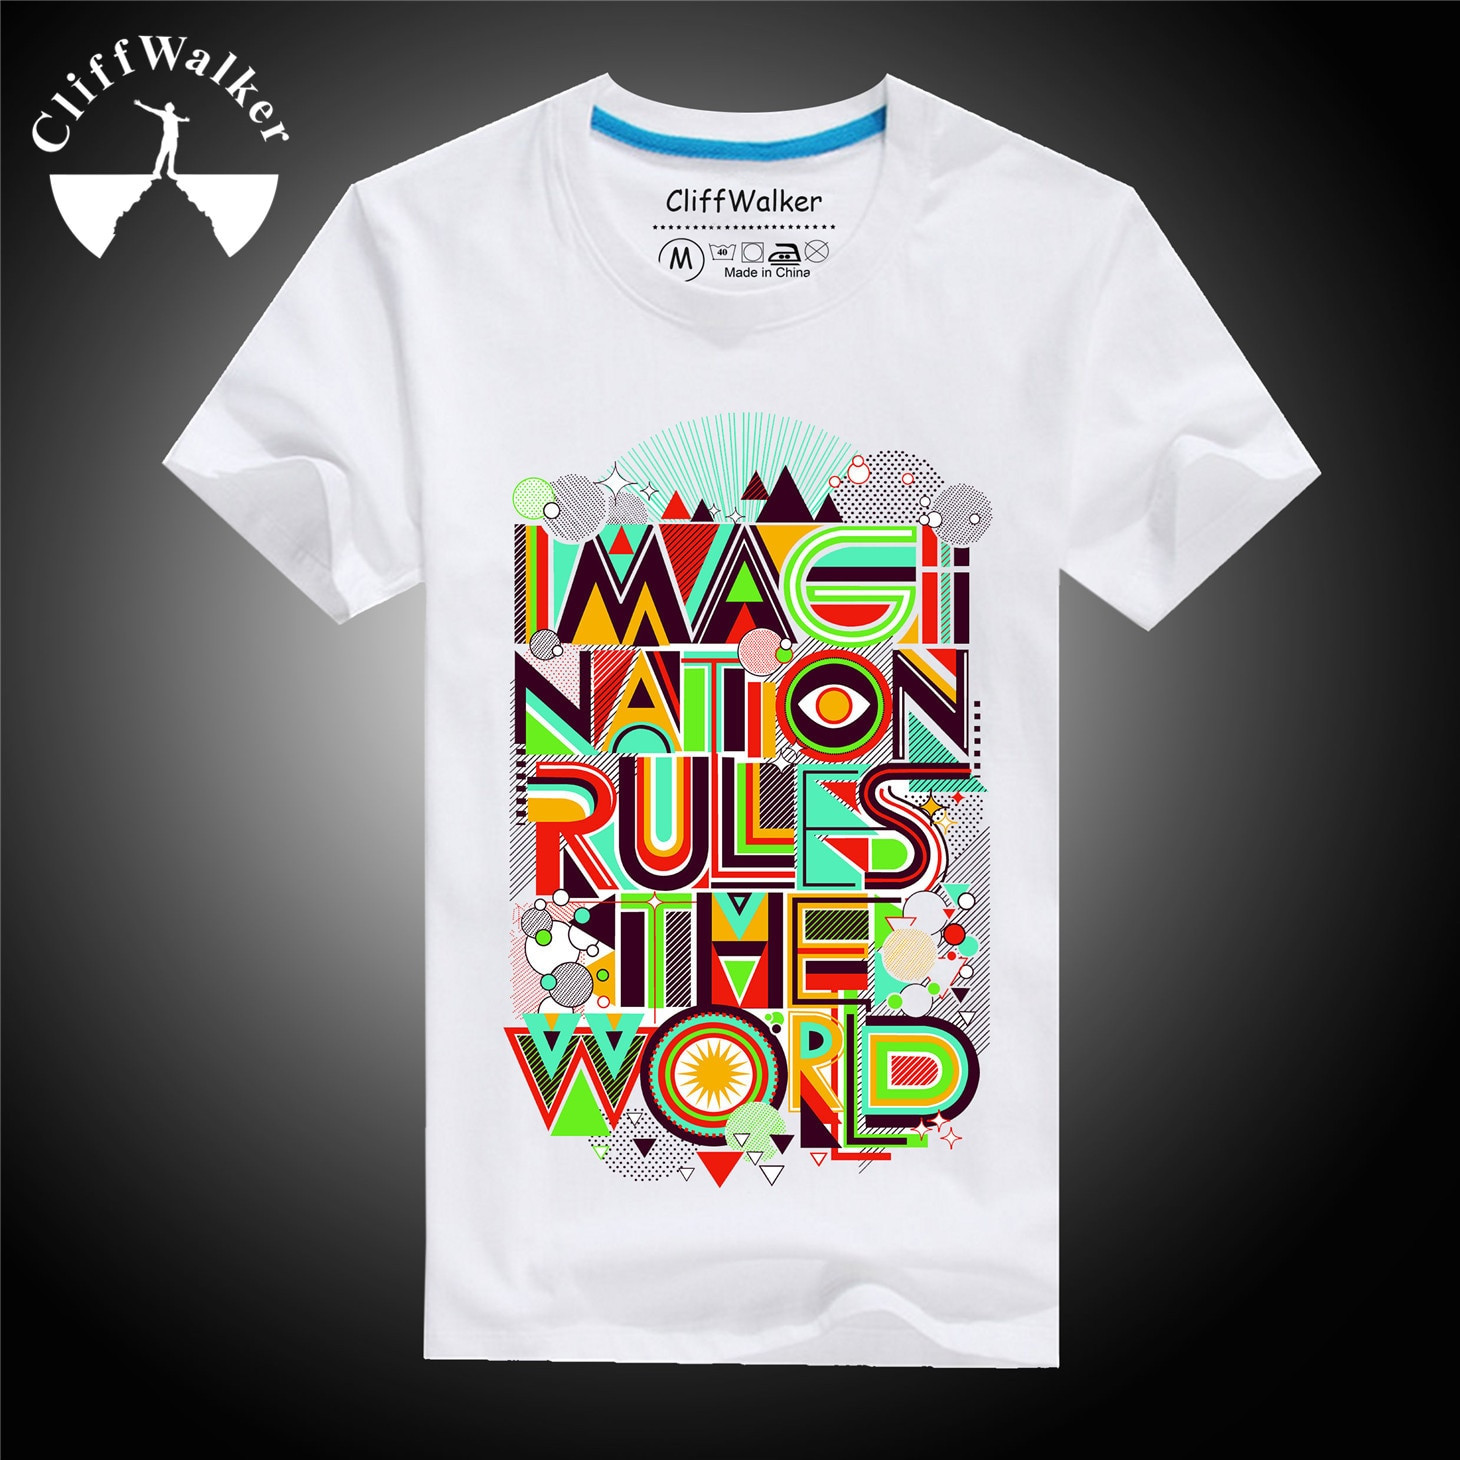 Summer T Shirt Design
 2015 Latest T shirt Design for Summer Stylish White Mens